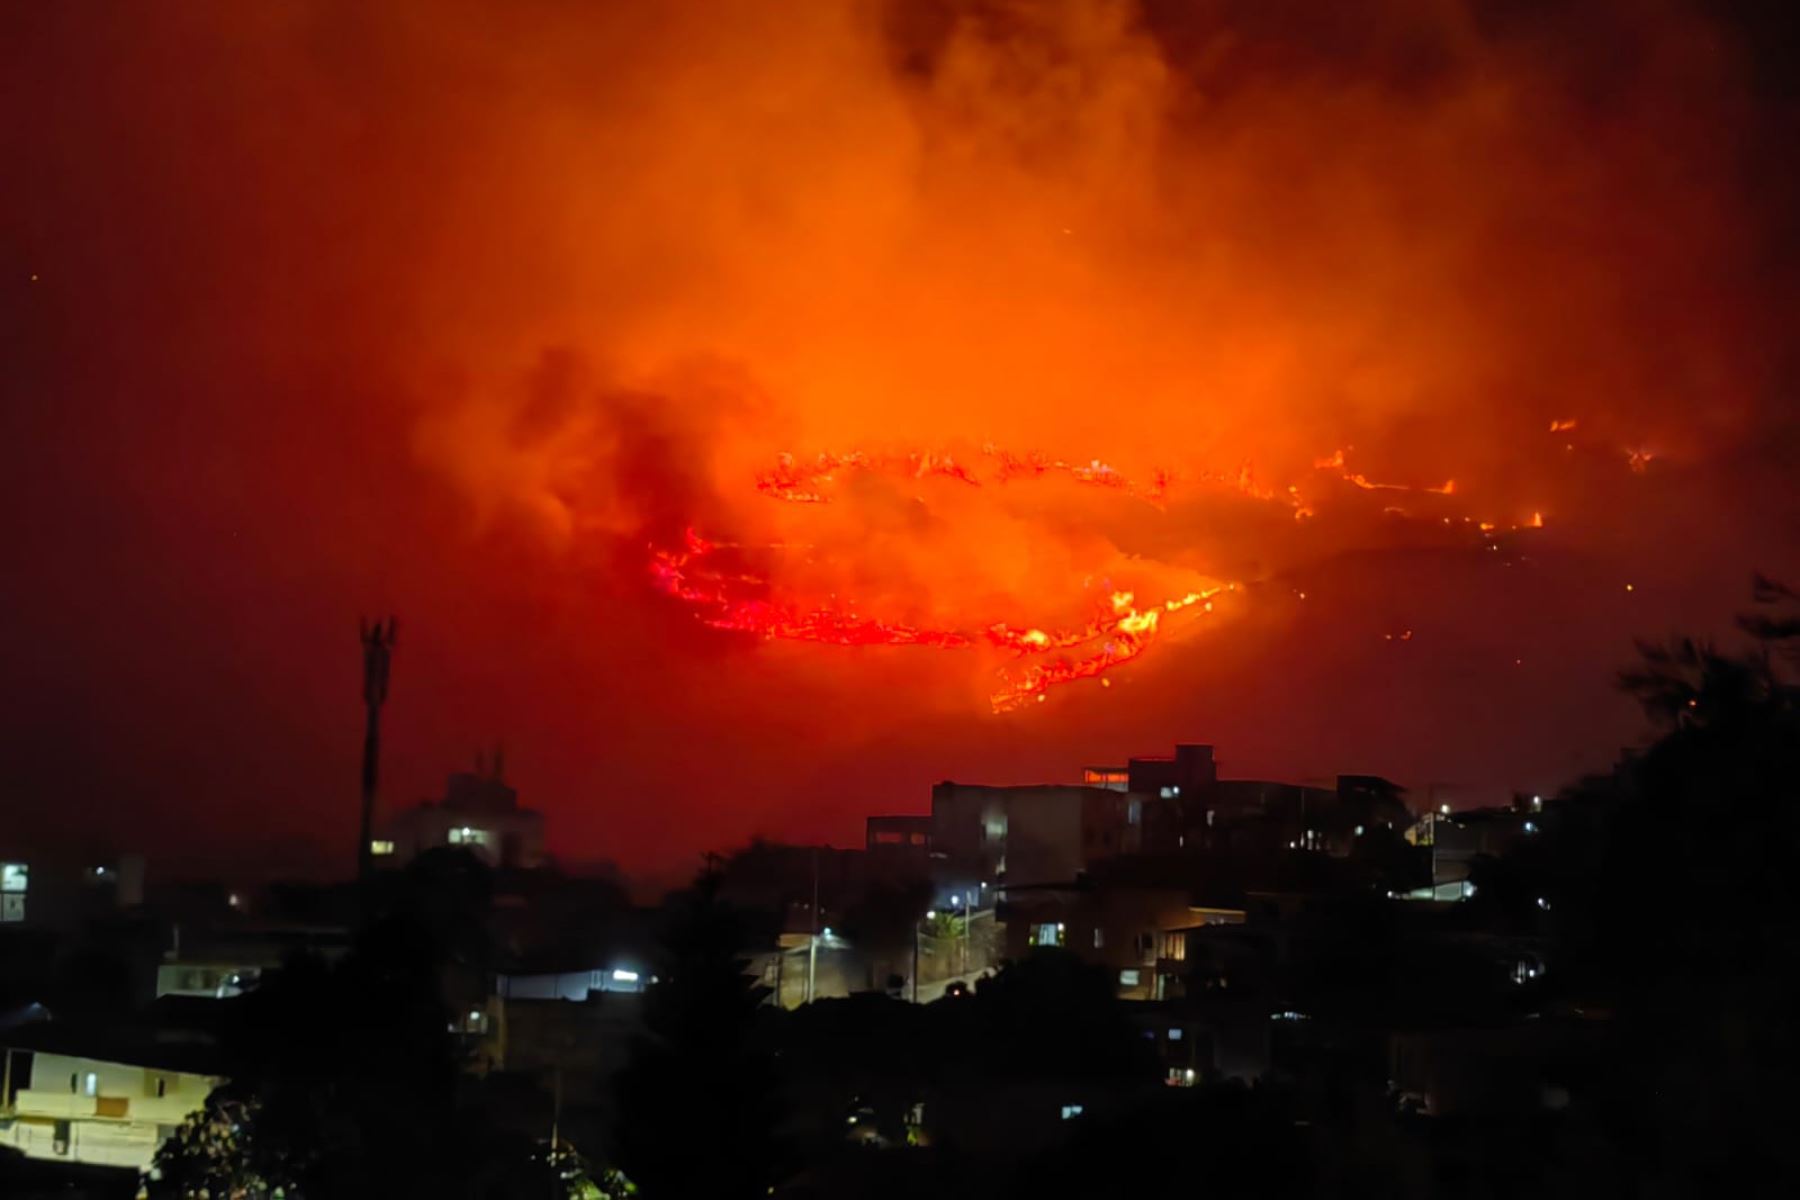 Incendio forestal en los cerros en los sectores de Altos de Menga y Dapa, al norte de Cali, Colombia. Foto: @rafagonzalez64